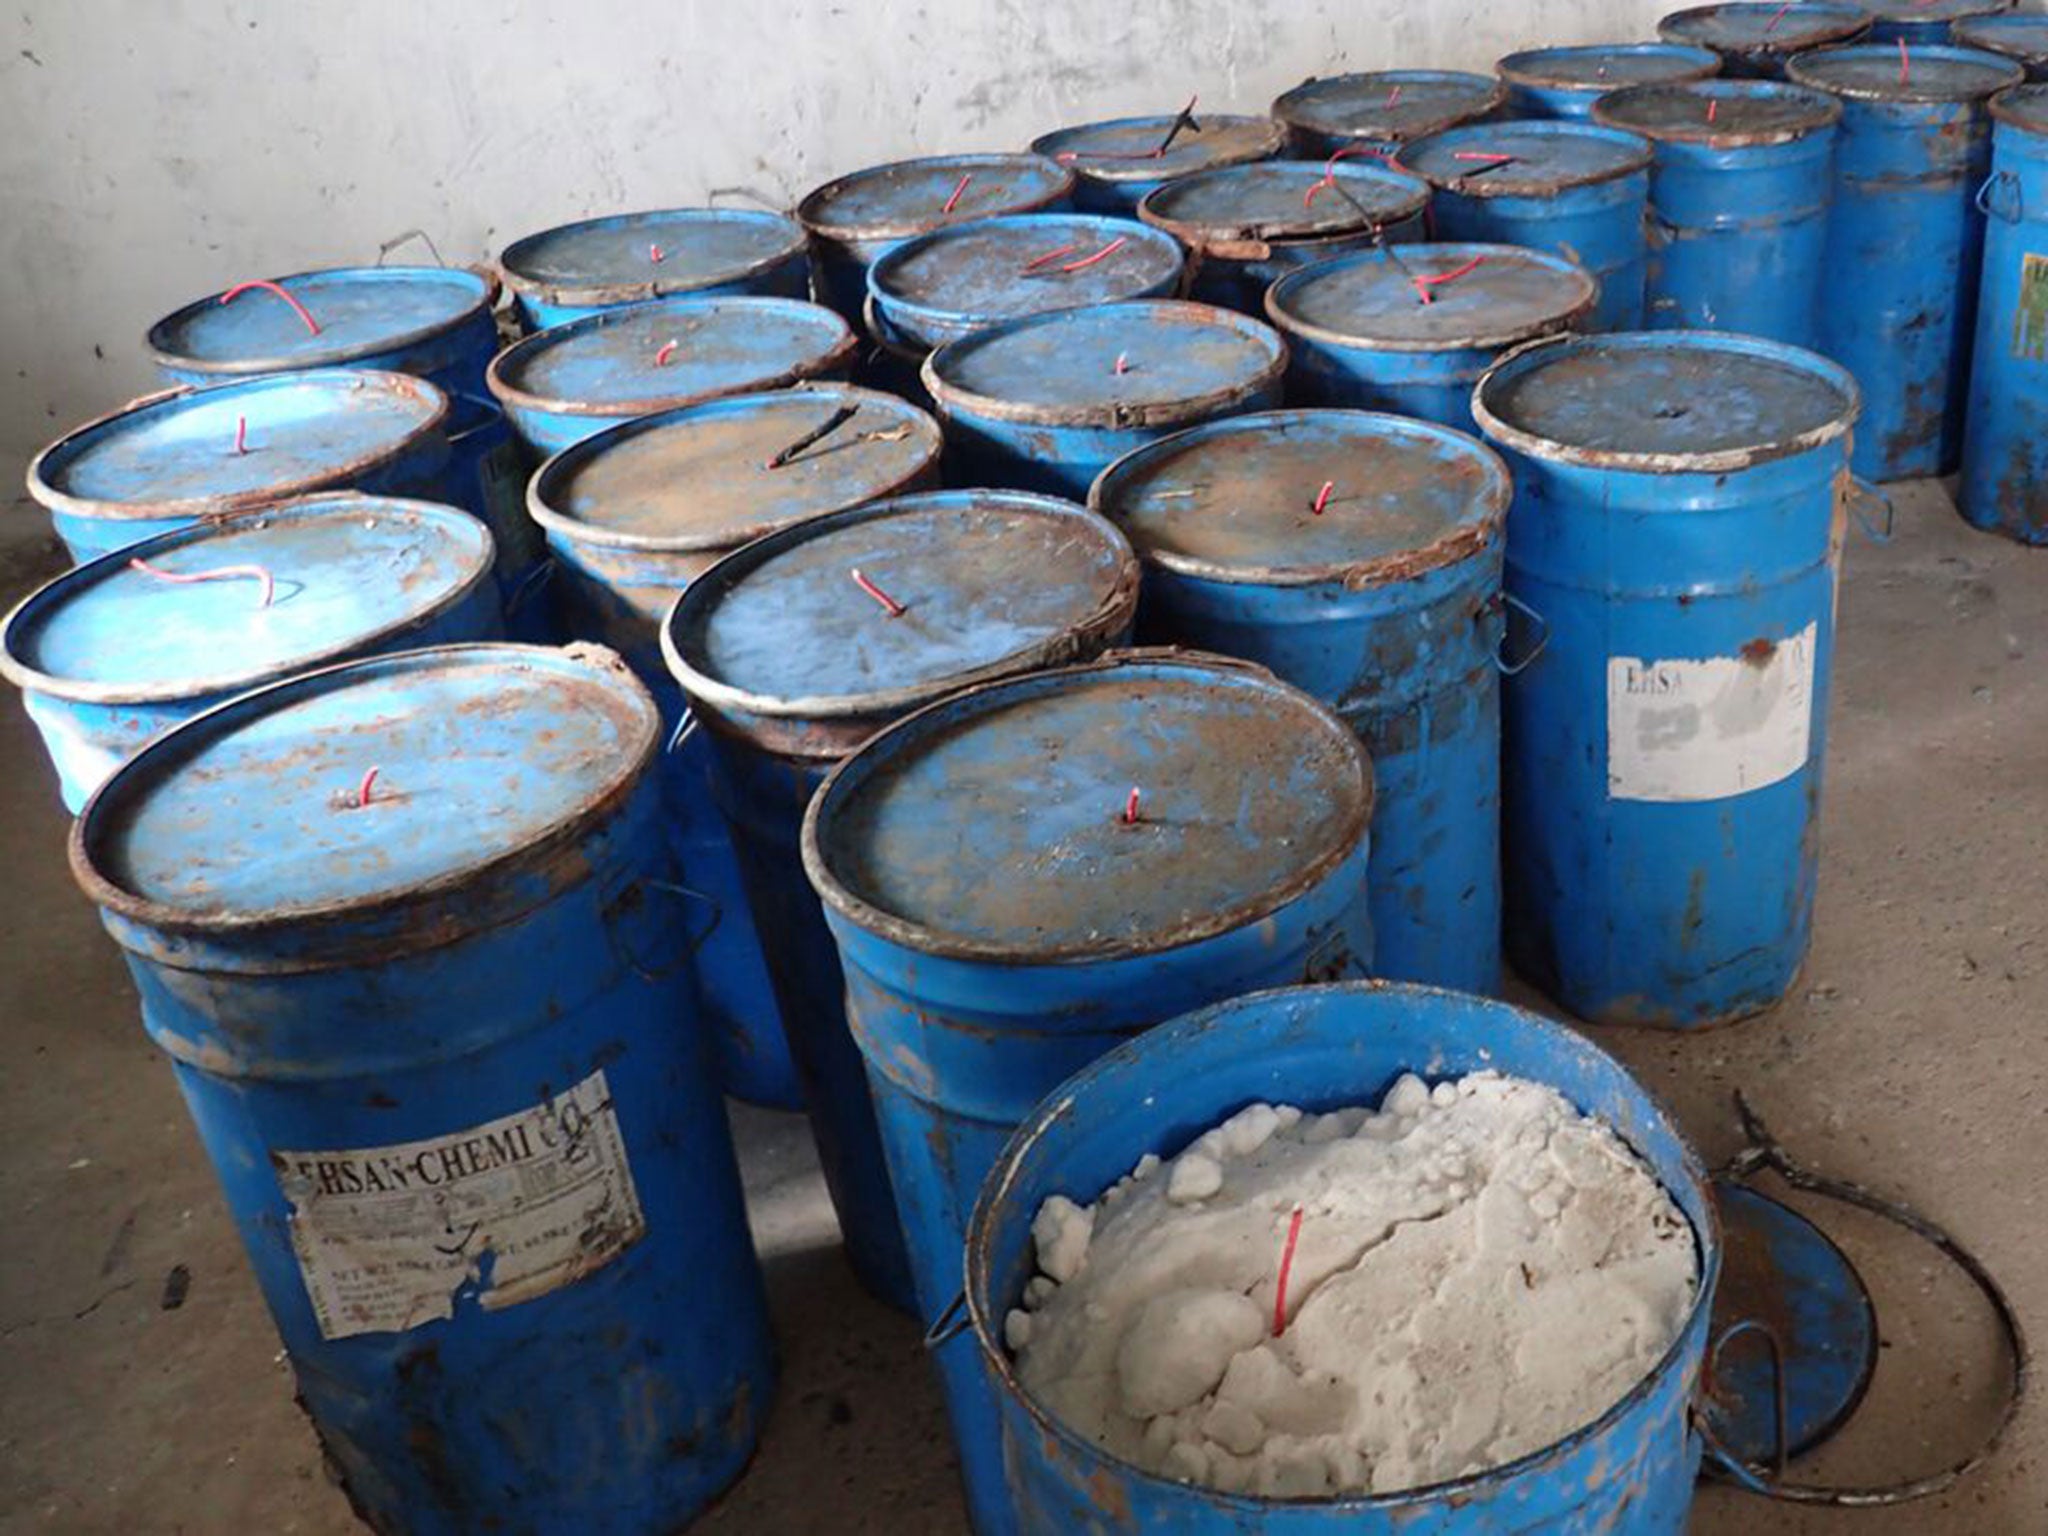 White petroleum drums manufactured in Iran found near the Mosul Dam in Iraq, February 2015